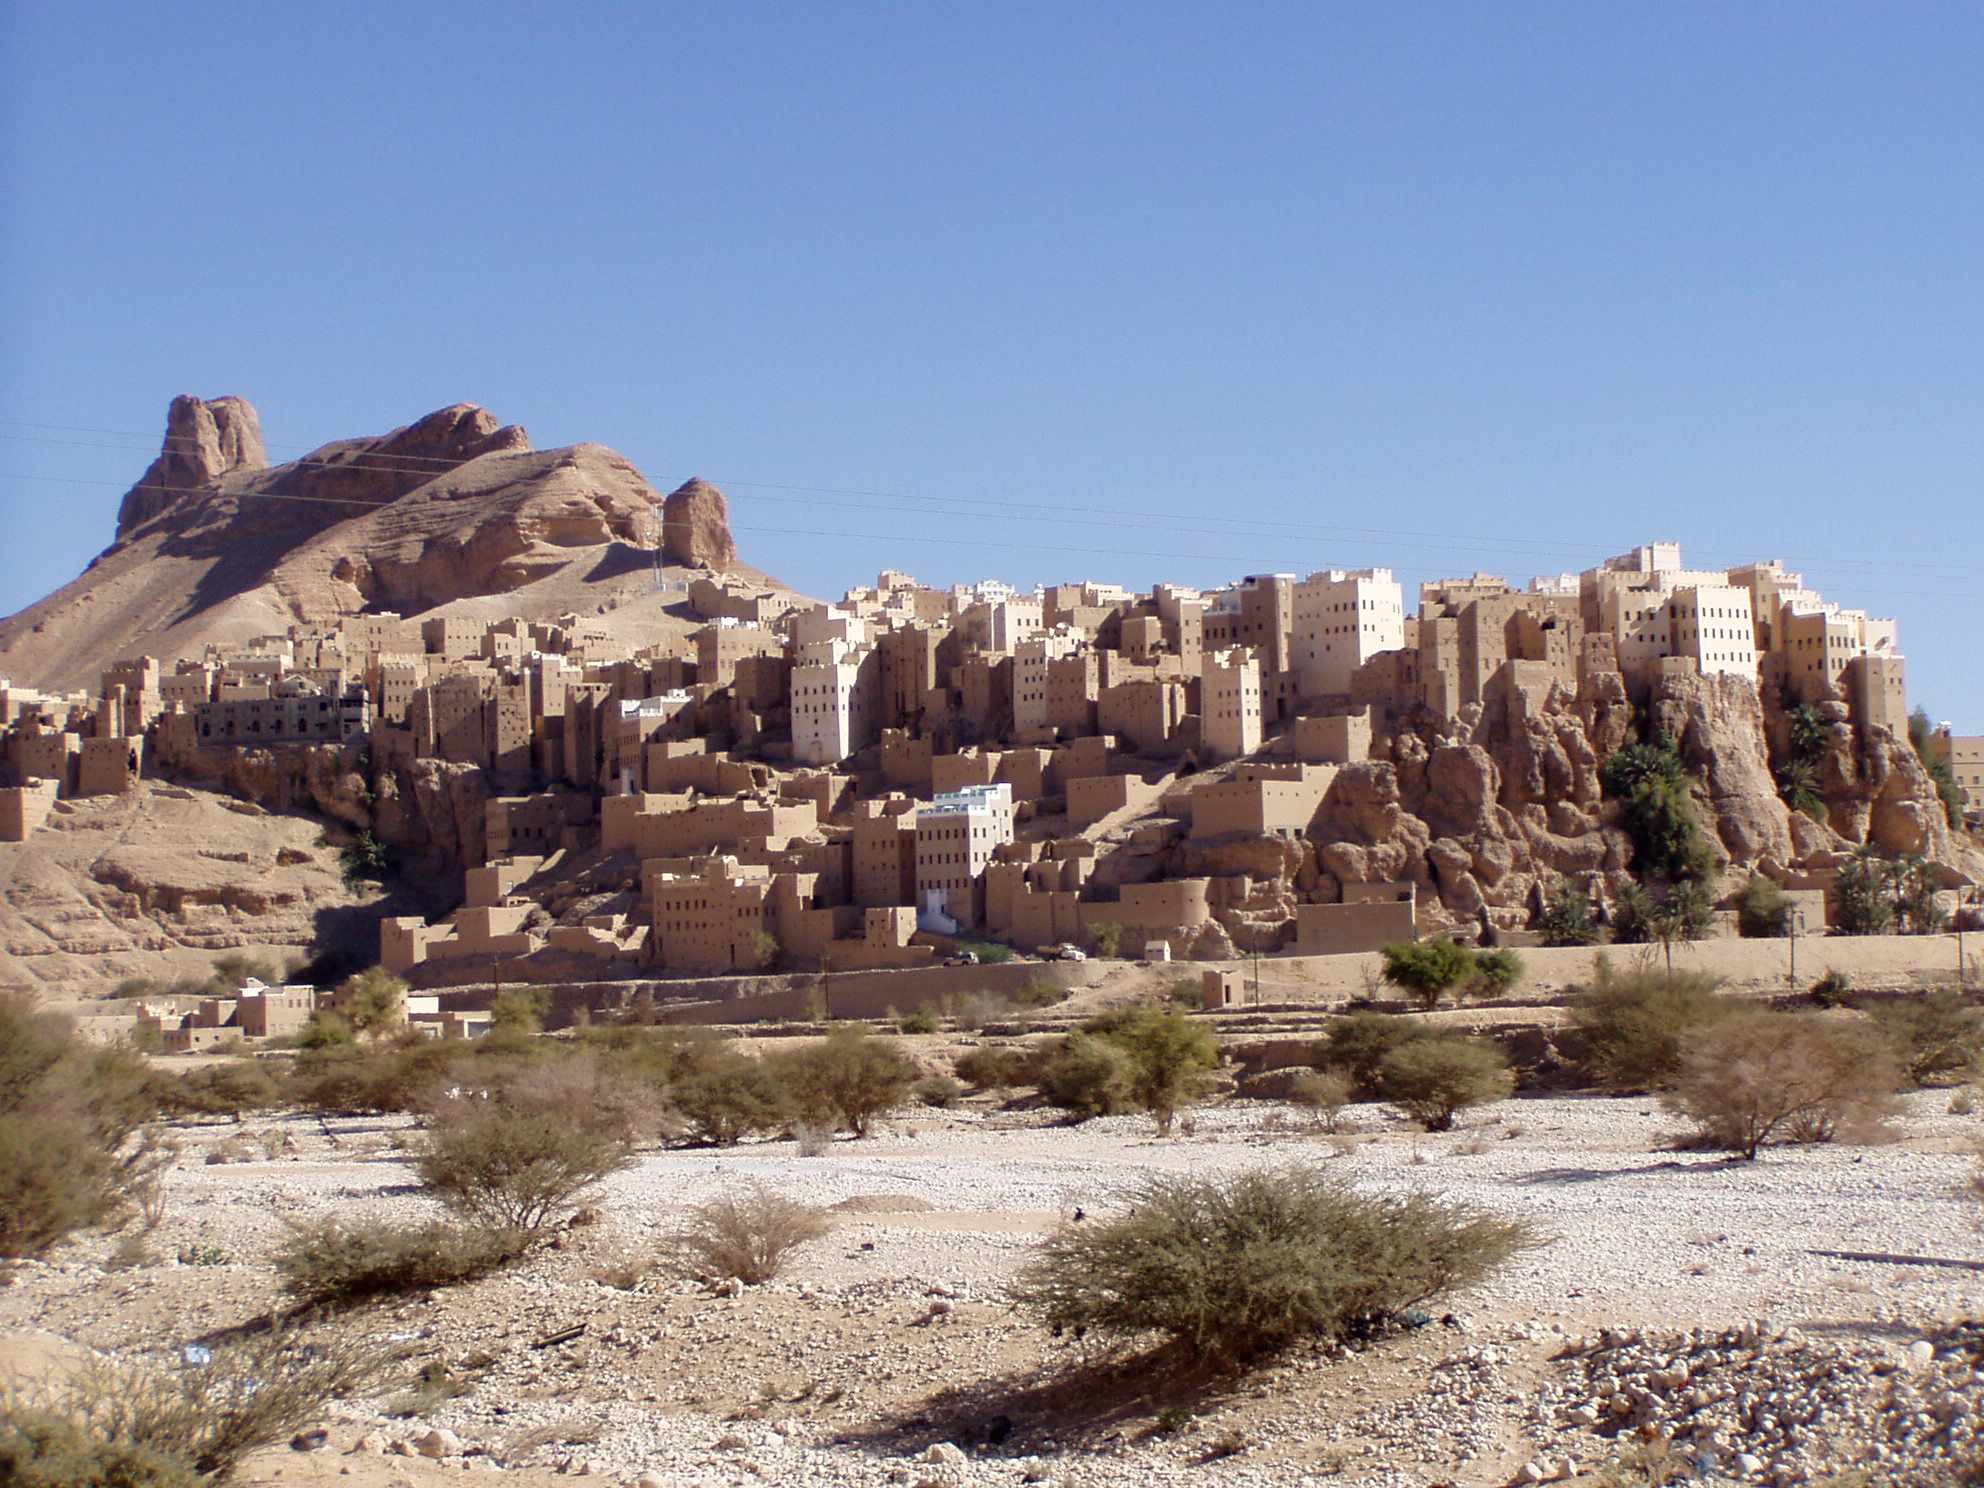 Den otroliga byn i Jemen byggd på ett 150 meter högt gigantiskt stenblock 2